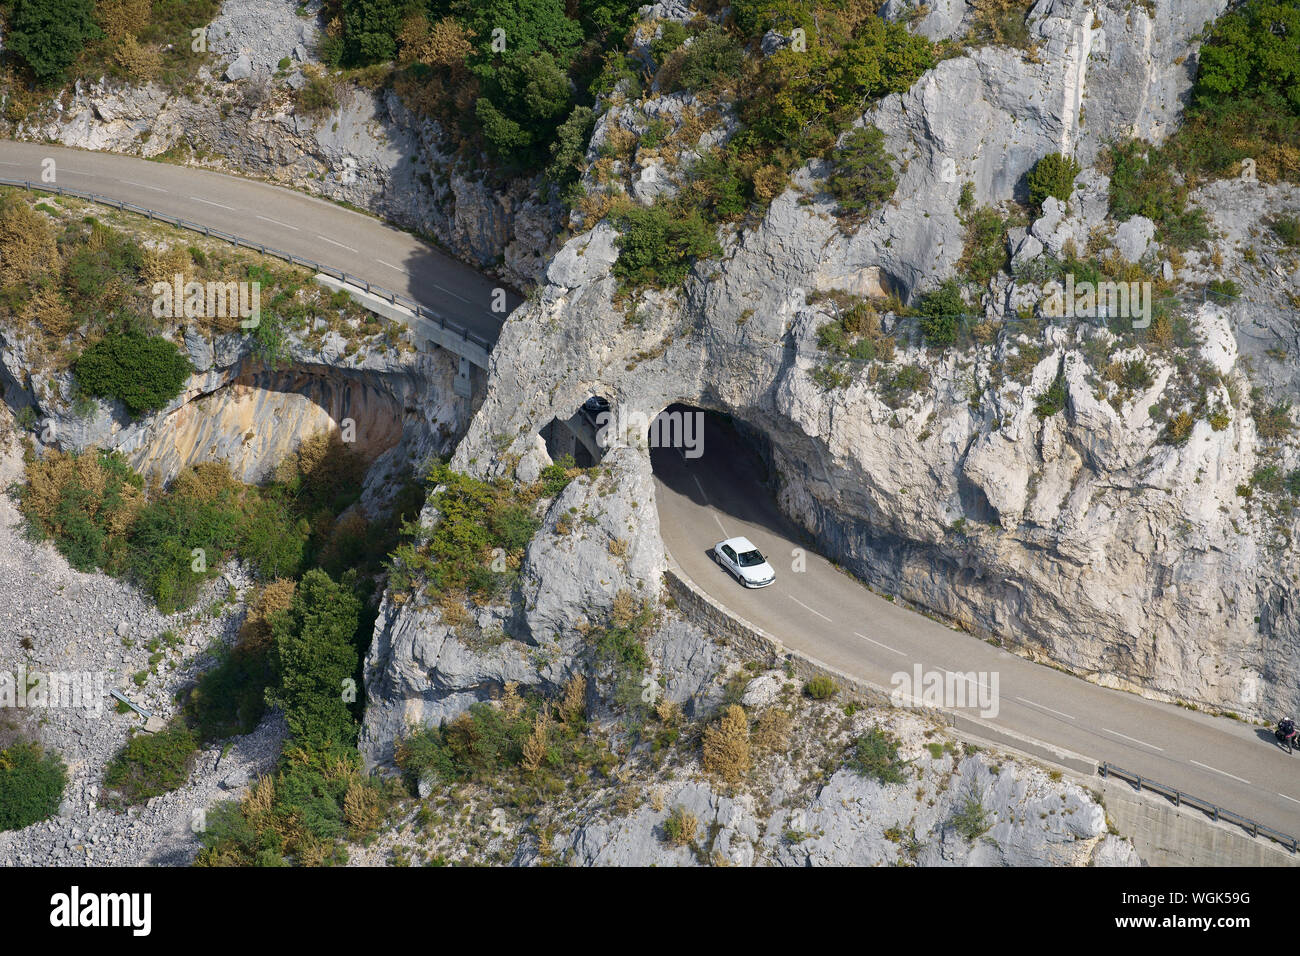 VUE AÉRIENNE.Route pittoresque sur une falaise entre le village de Gréolières et la station de ski de Gréolières-les-Neiges.Alpes-Maritimes, France. Banque D'Images